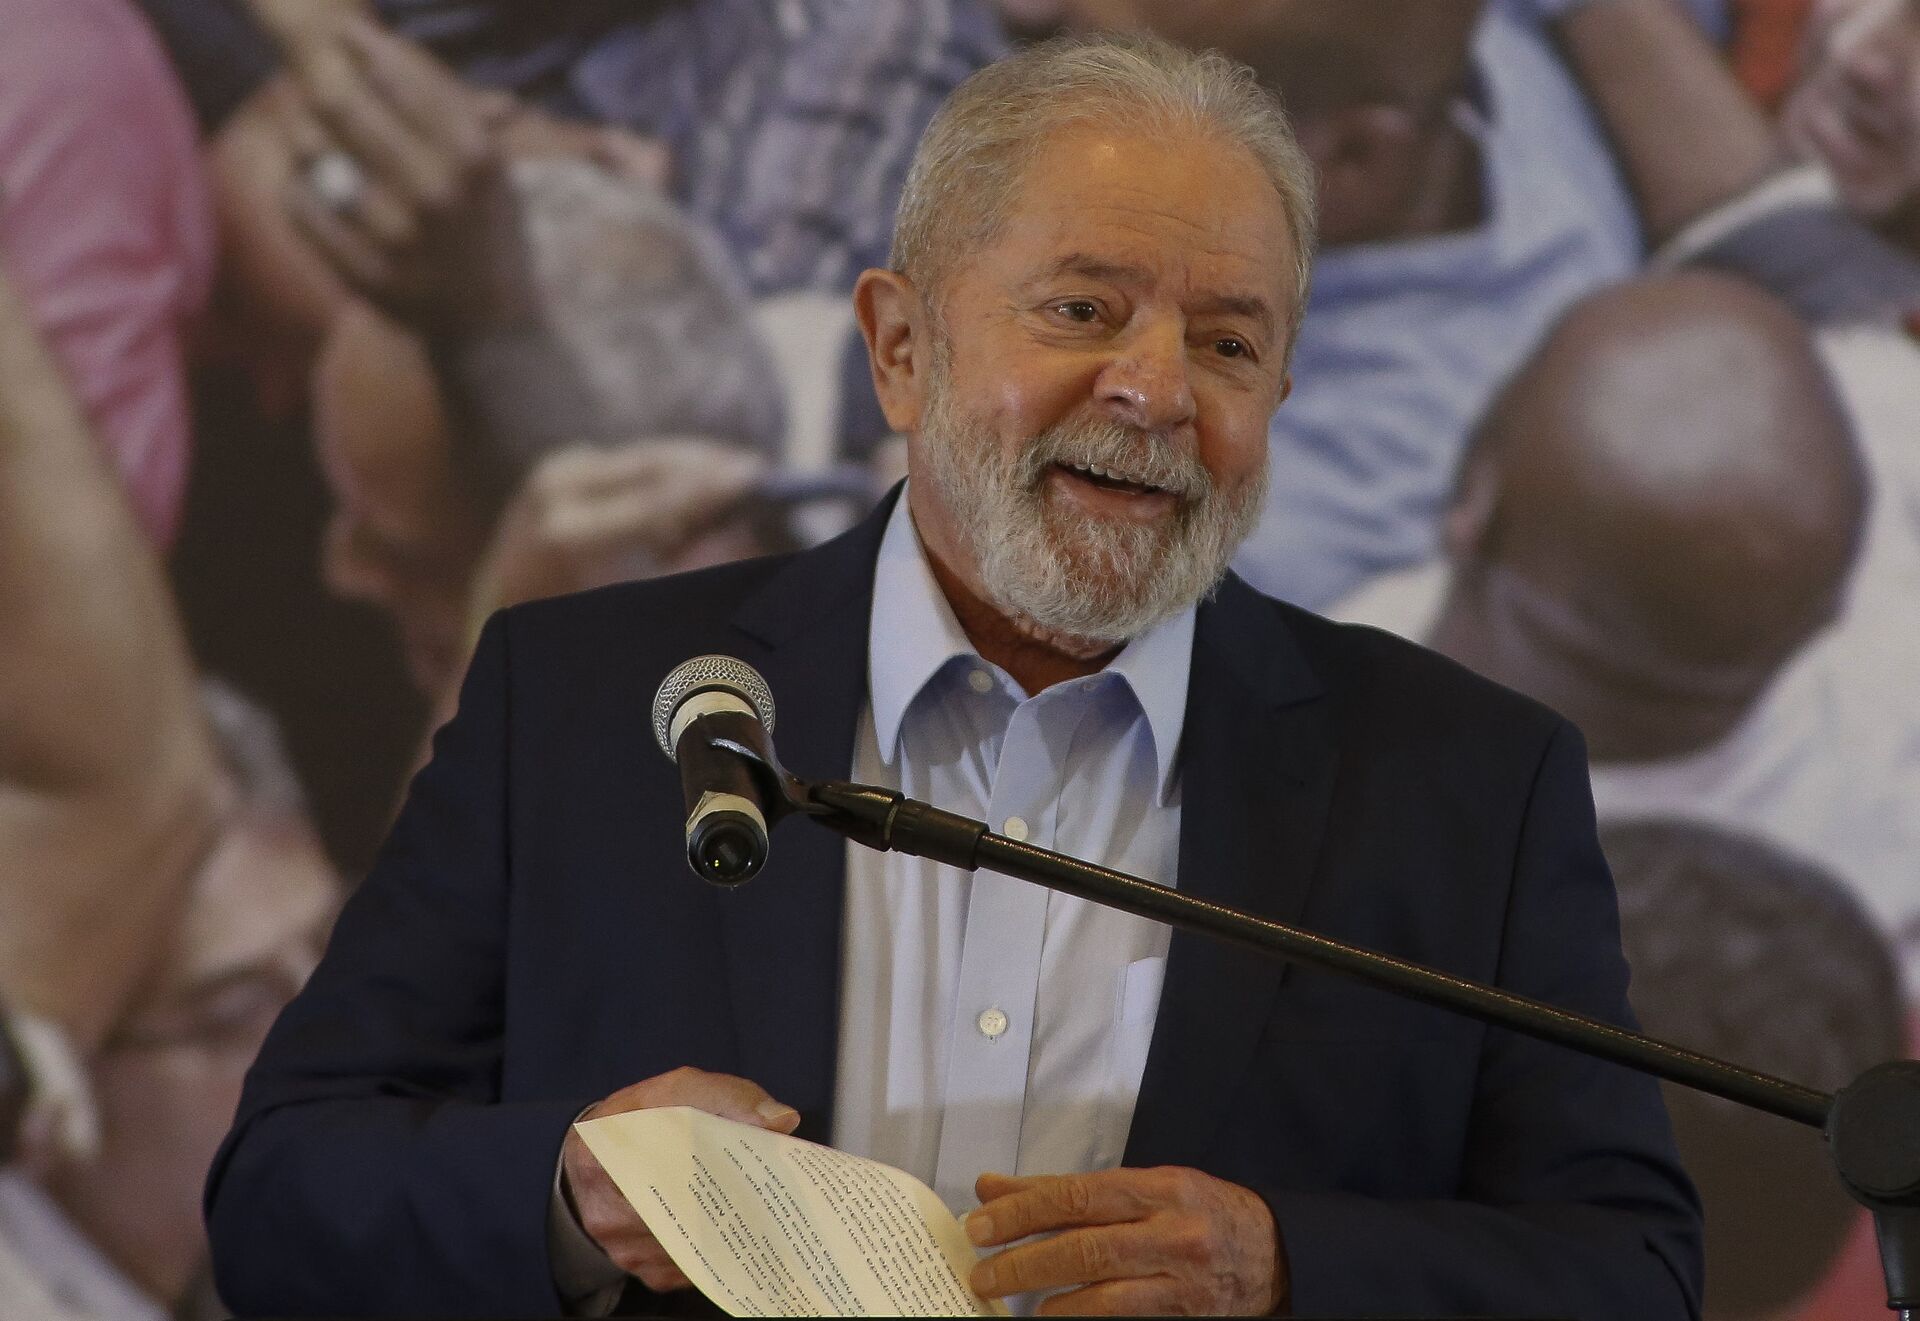 Governador do Maranhão alertou Lula sobre possível atentado em 2022, diz mídia - Sputnik Brasil, 1920, 23.07.2021